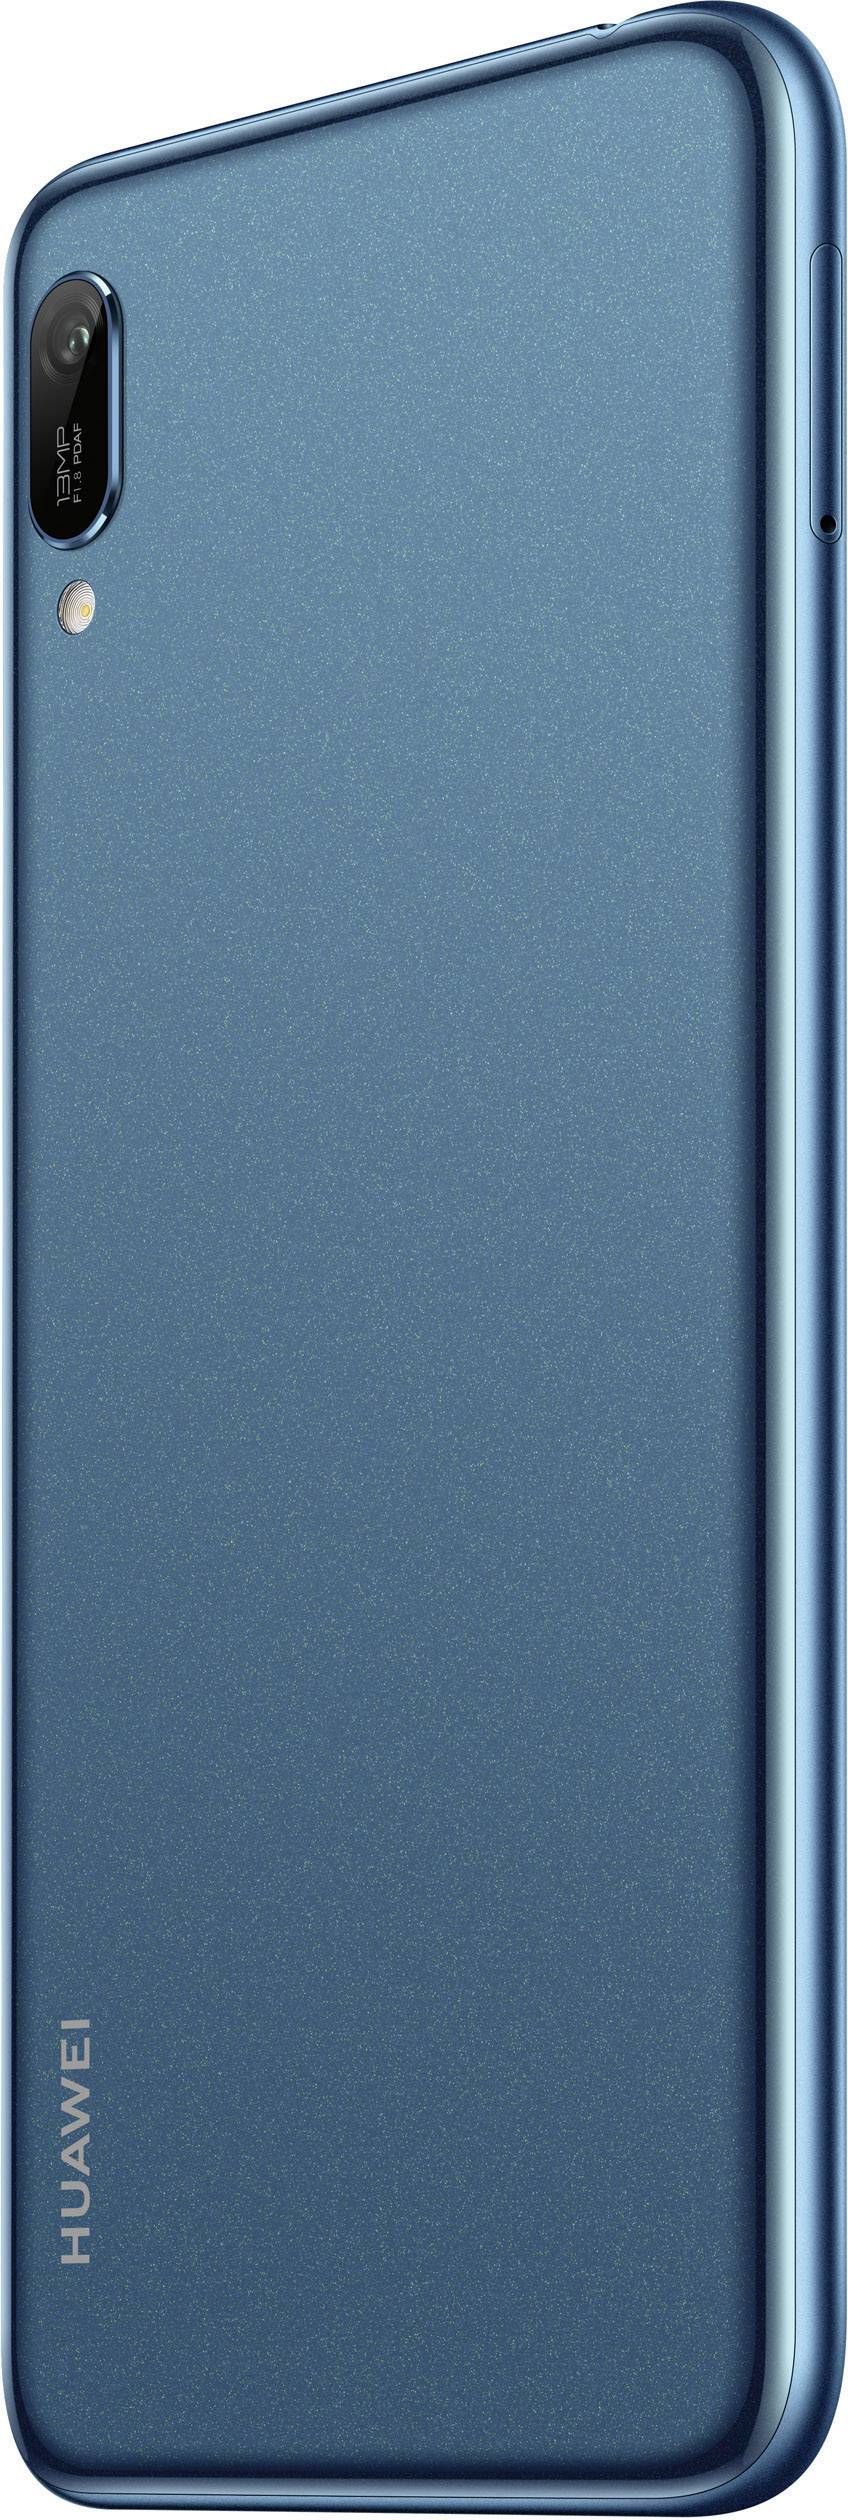 HUAWEI Y6 2019 Smartphone 32 GB 15.2 cm (6. inch) Sapphire blue 